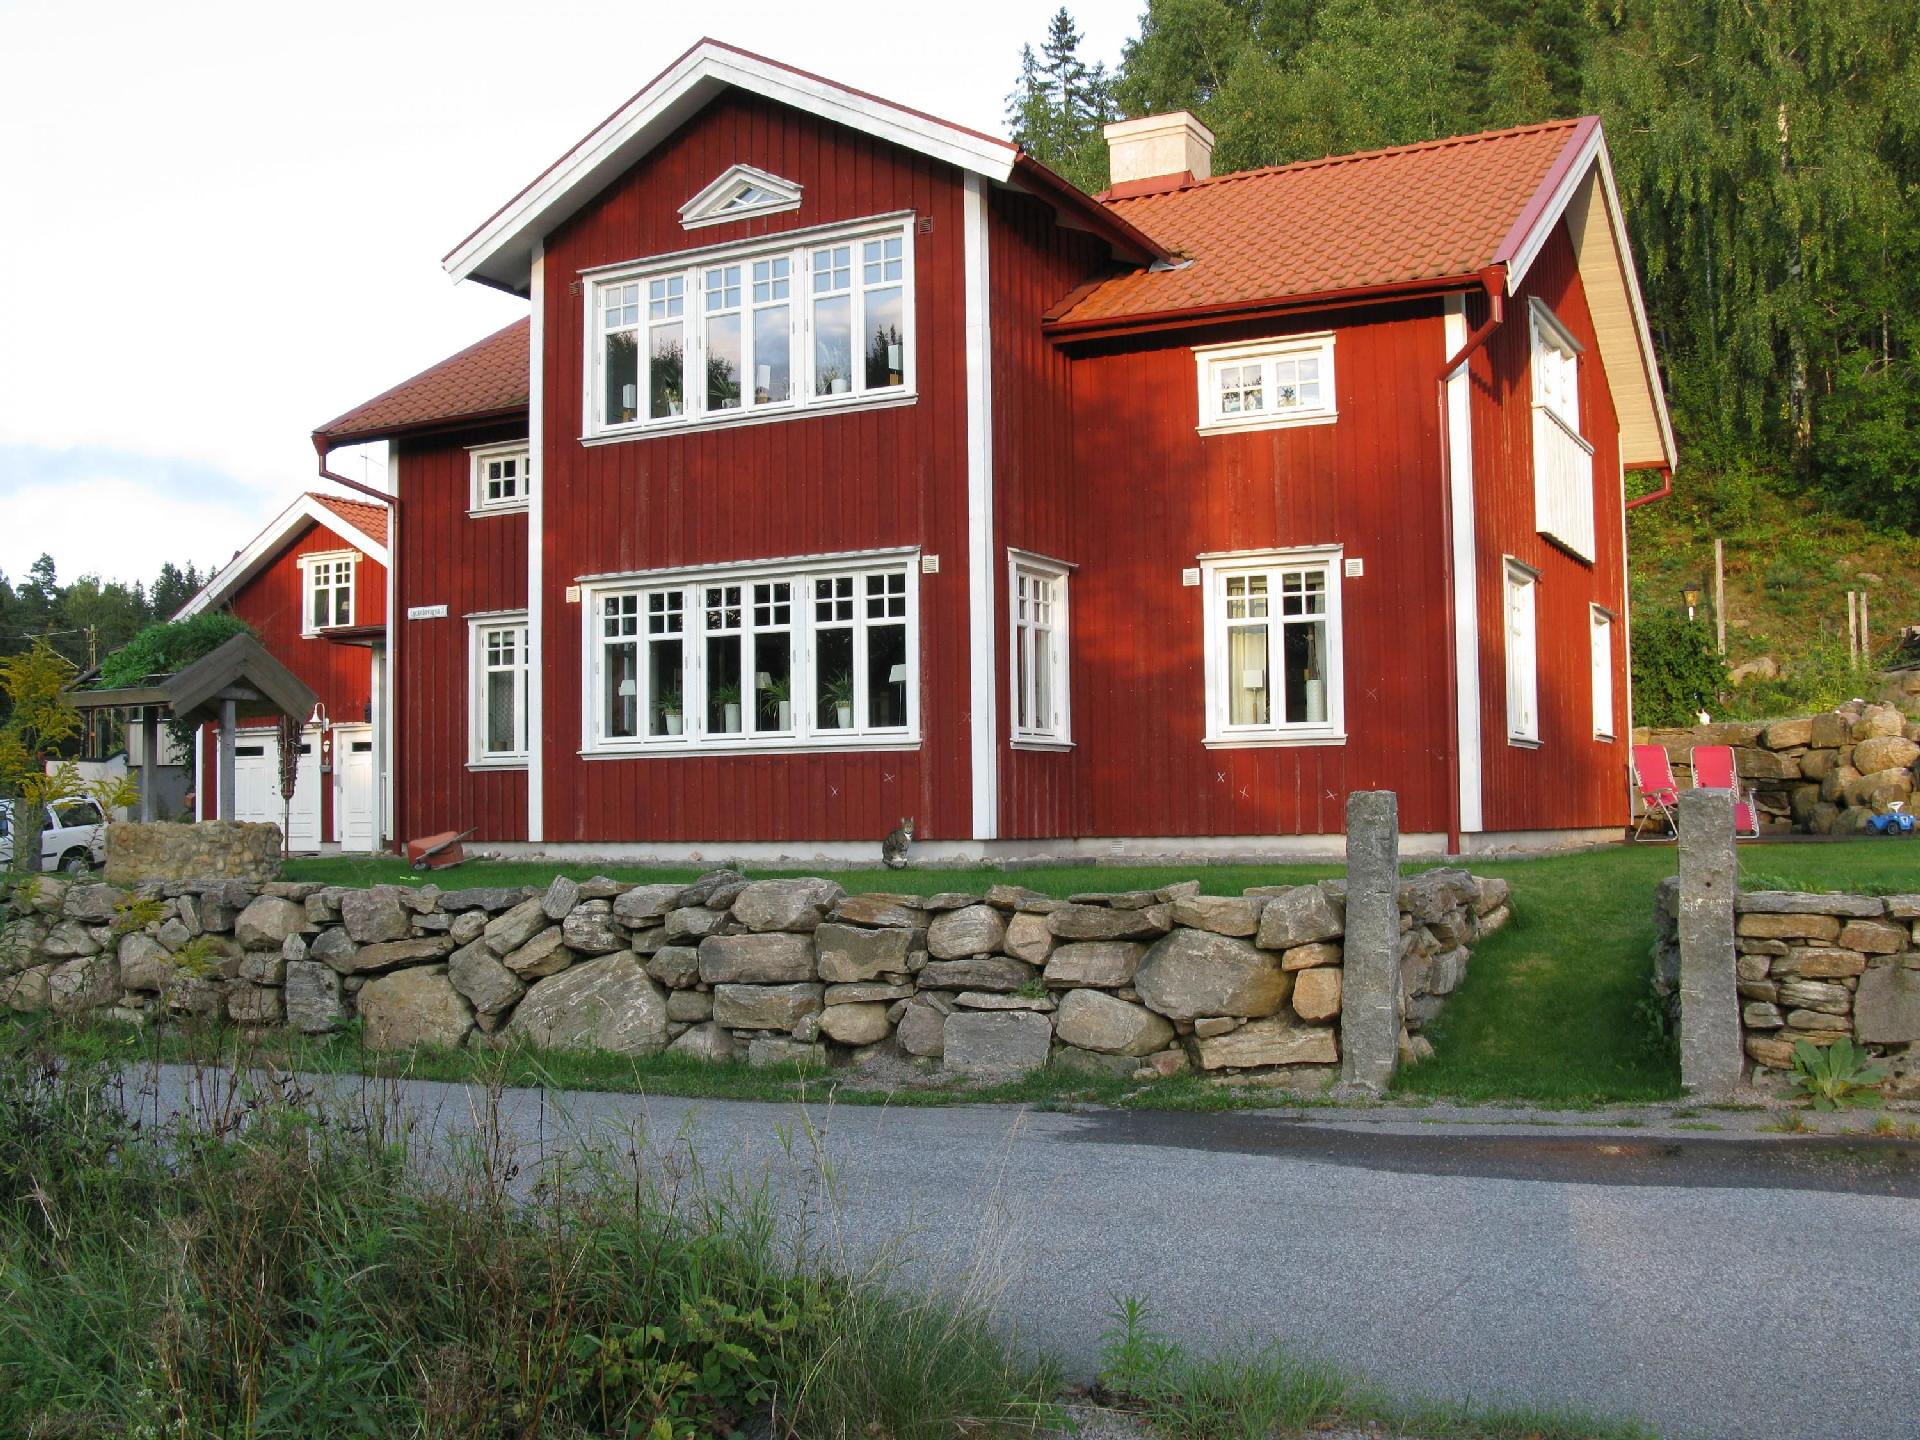 Ferienhaus in Lindebergshult-Räveskalla mit G Ferienhaus in Schweden